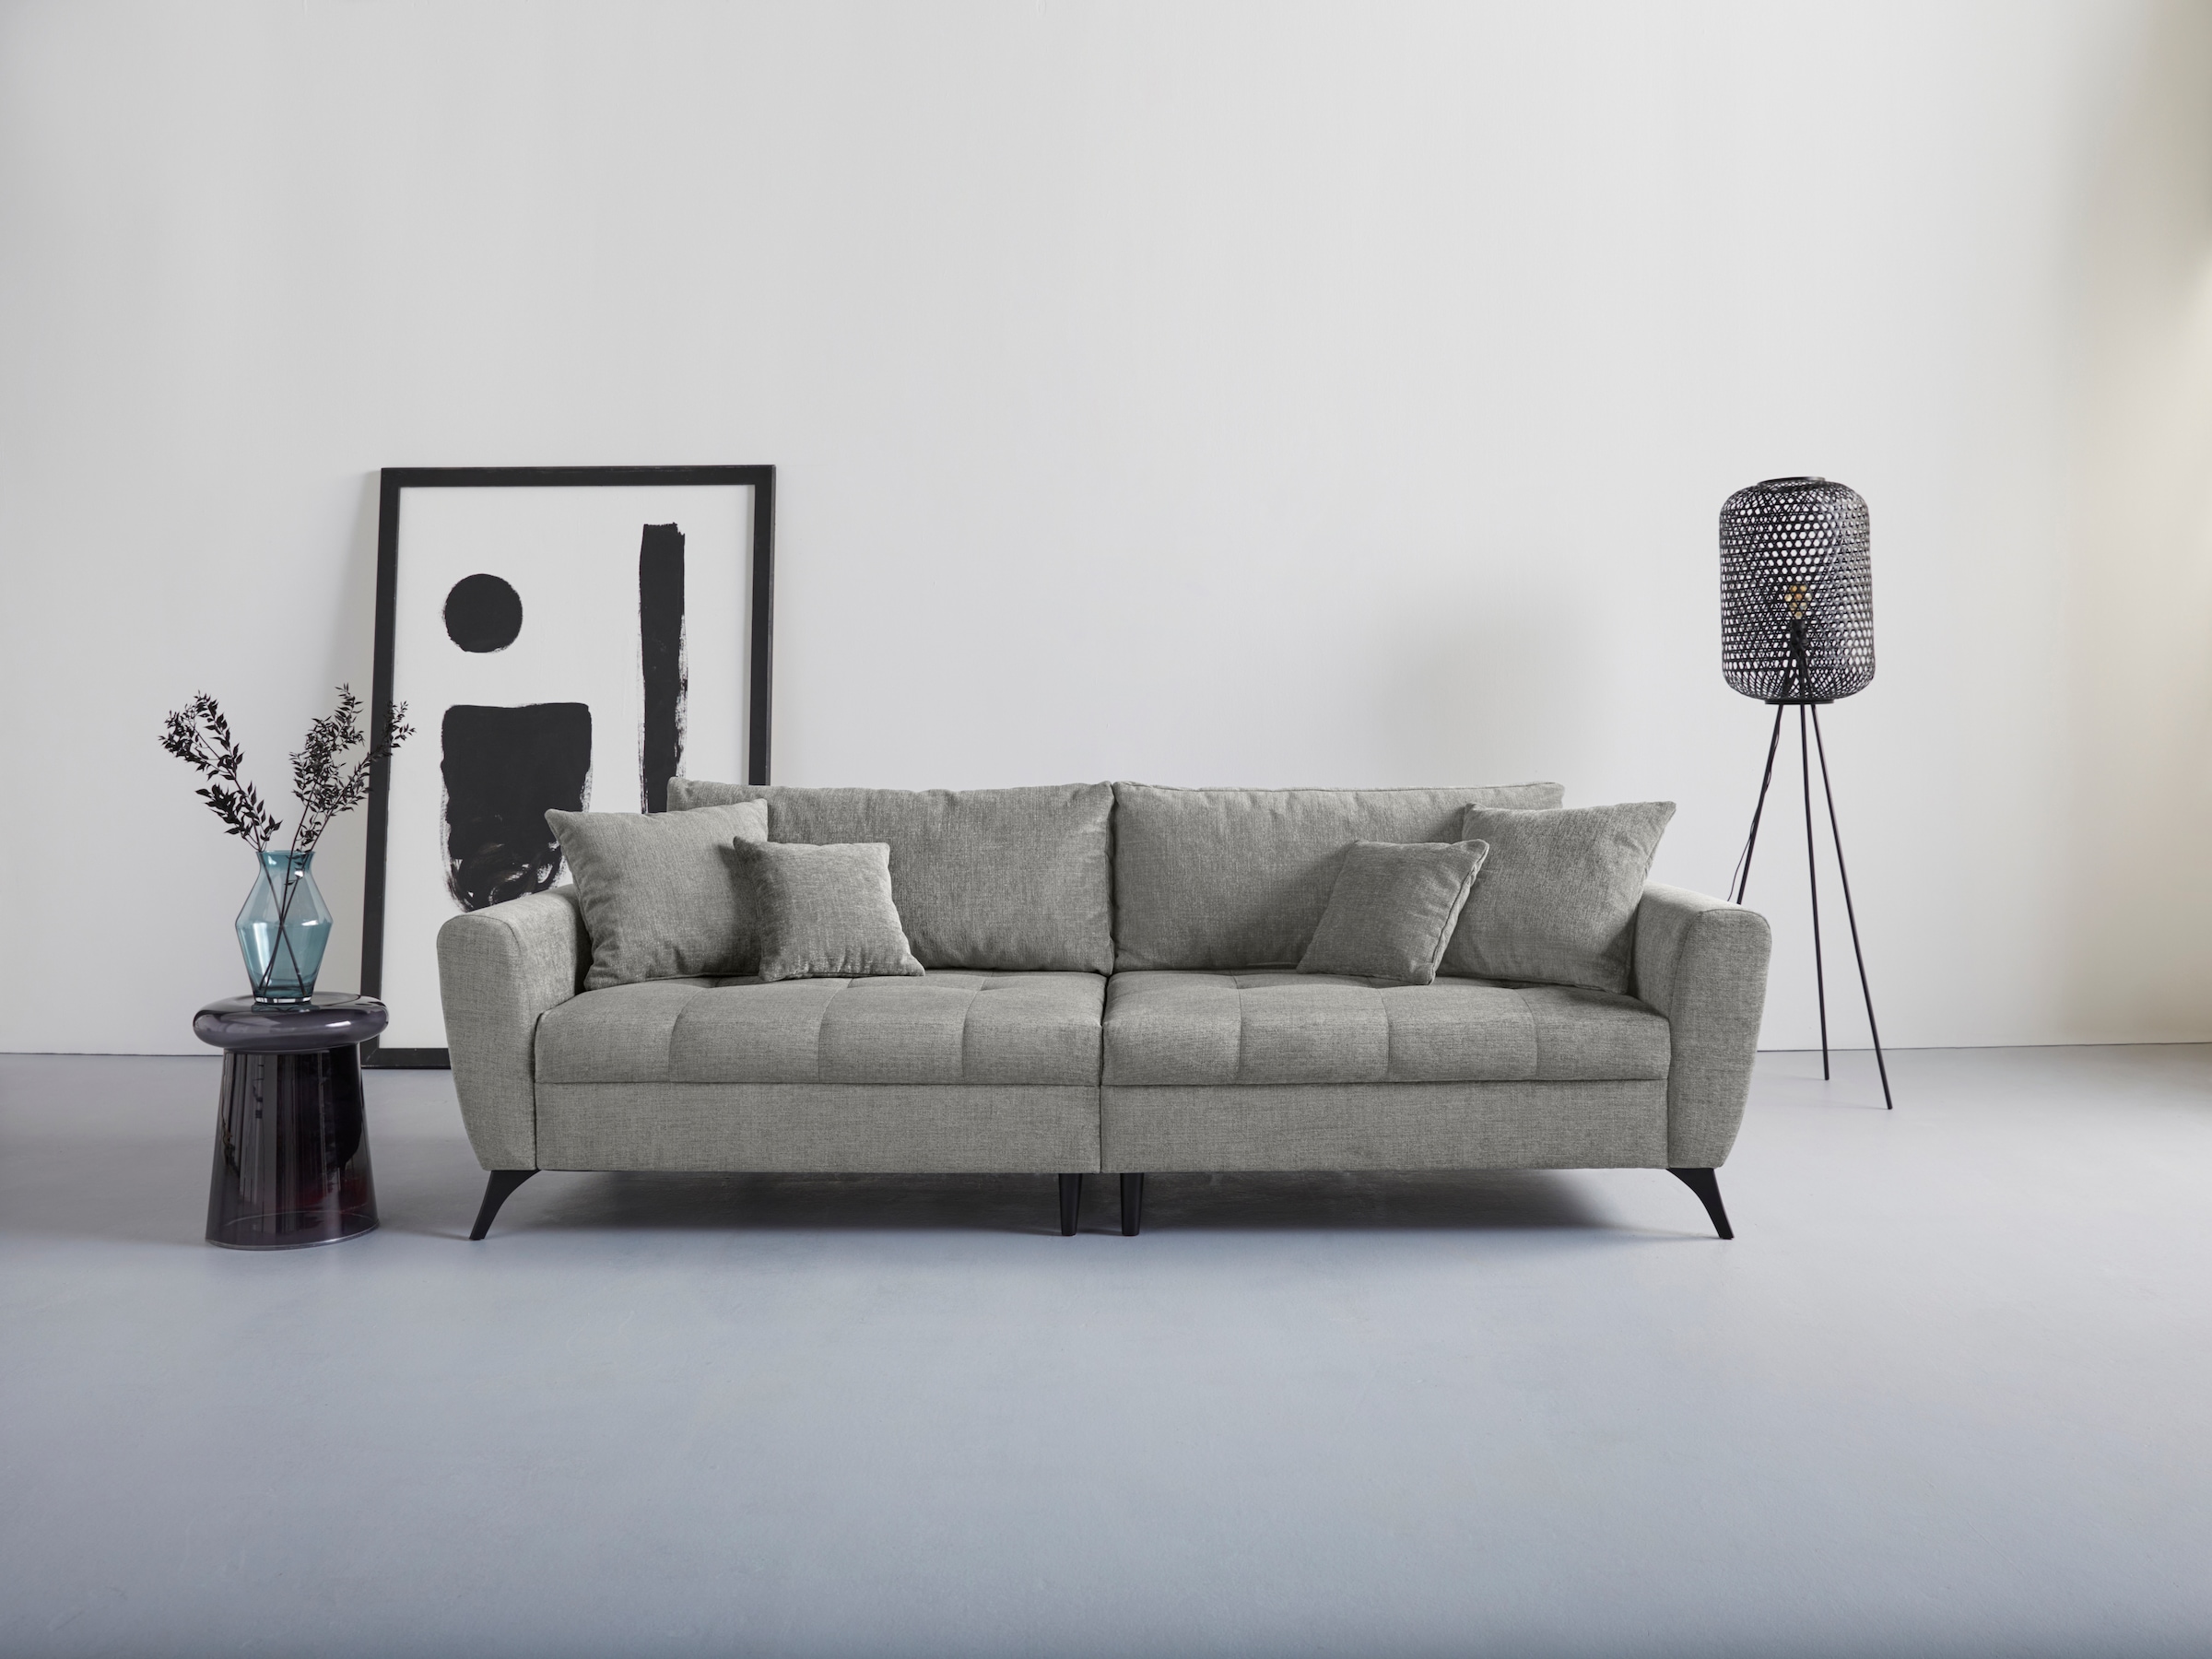 INOSIGN Big-Sofa »Lörby«, Belastbarkeit bis 140kg pro Sitzplatz, auch mit Aqua clean-Bezug